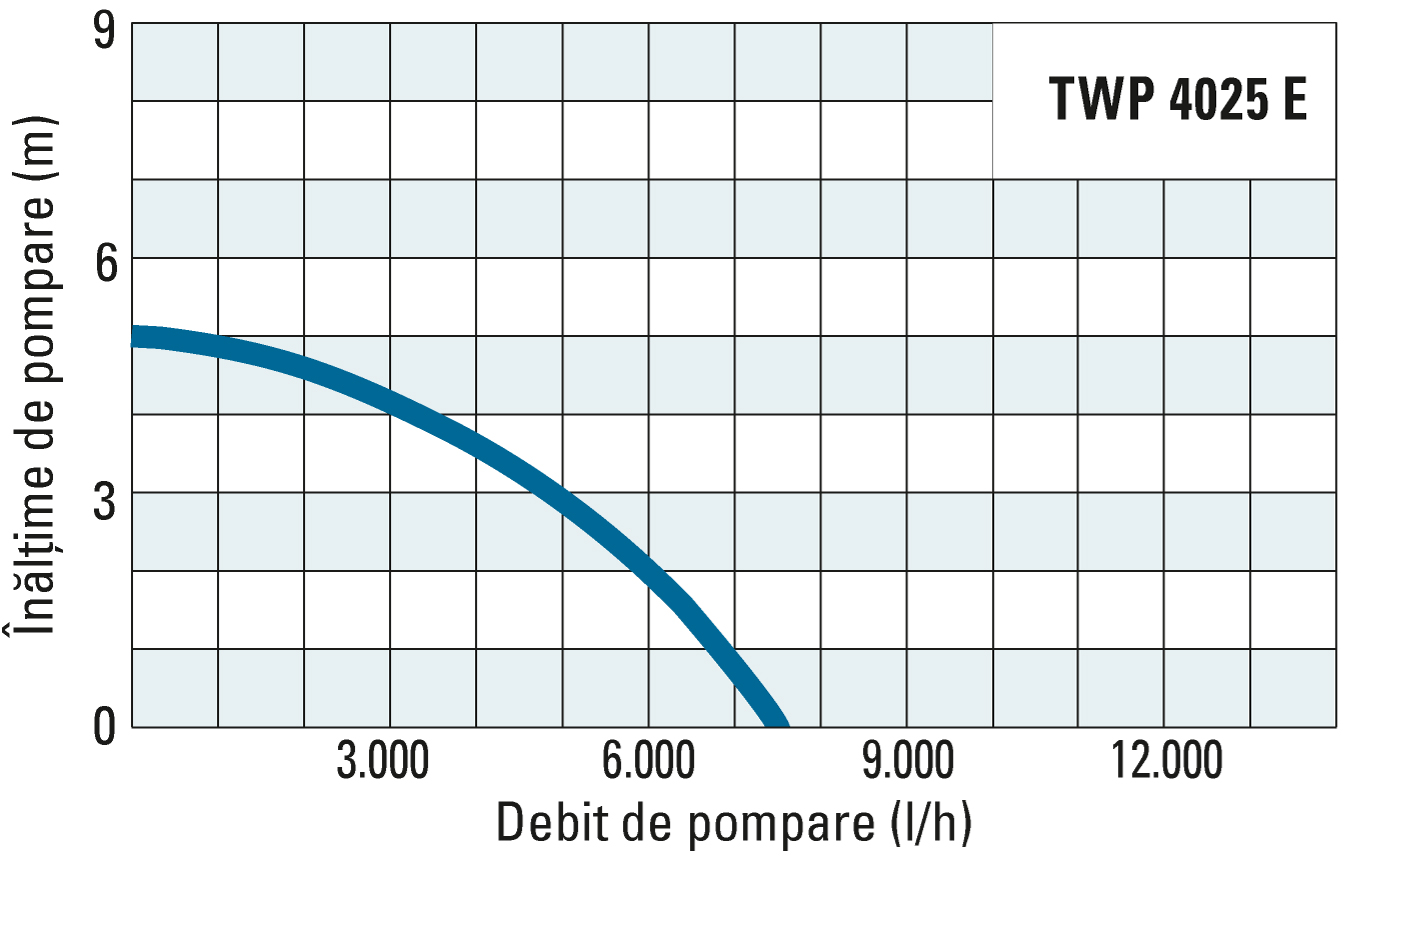 Înălţimea de pompare şi debitul de pompare al unităţii TWP 4025 E